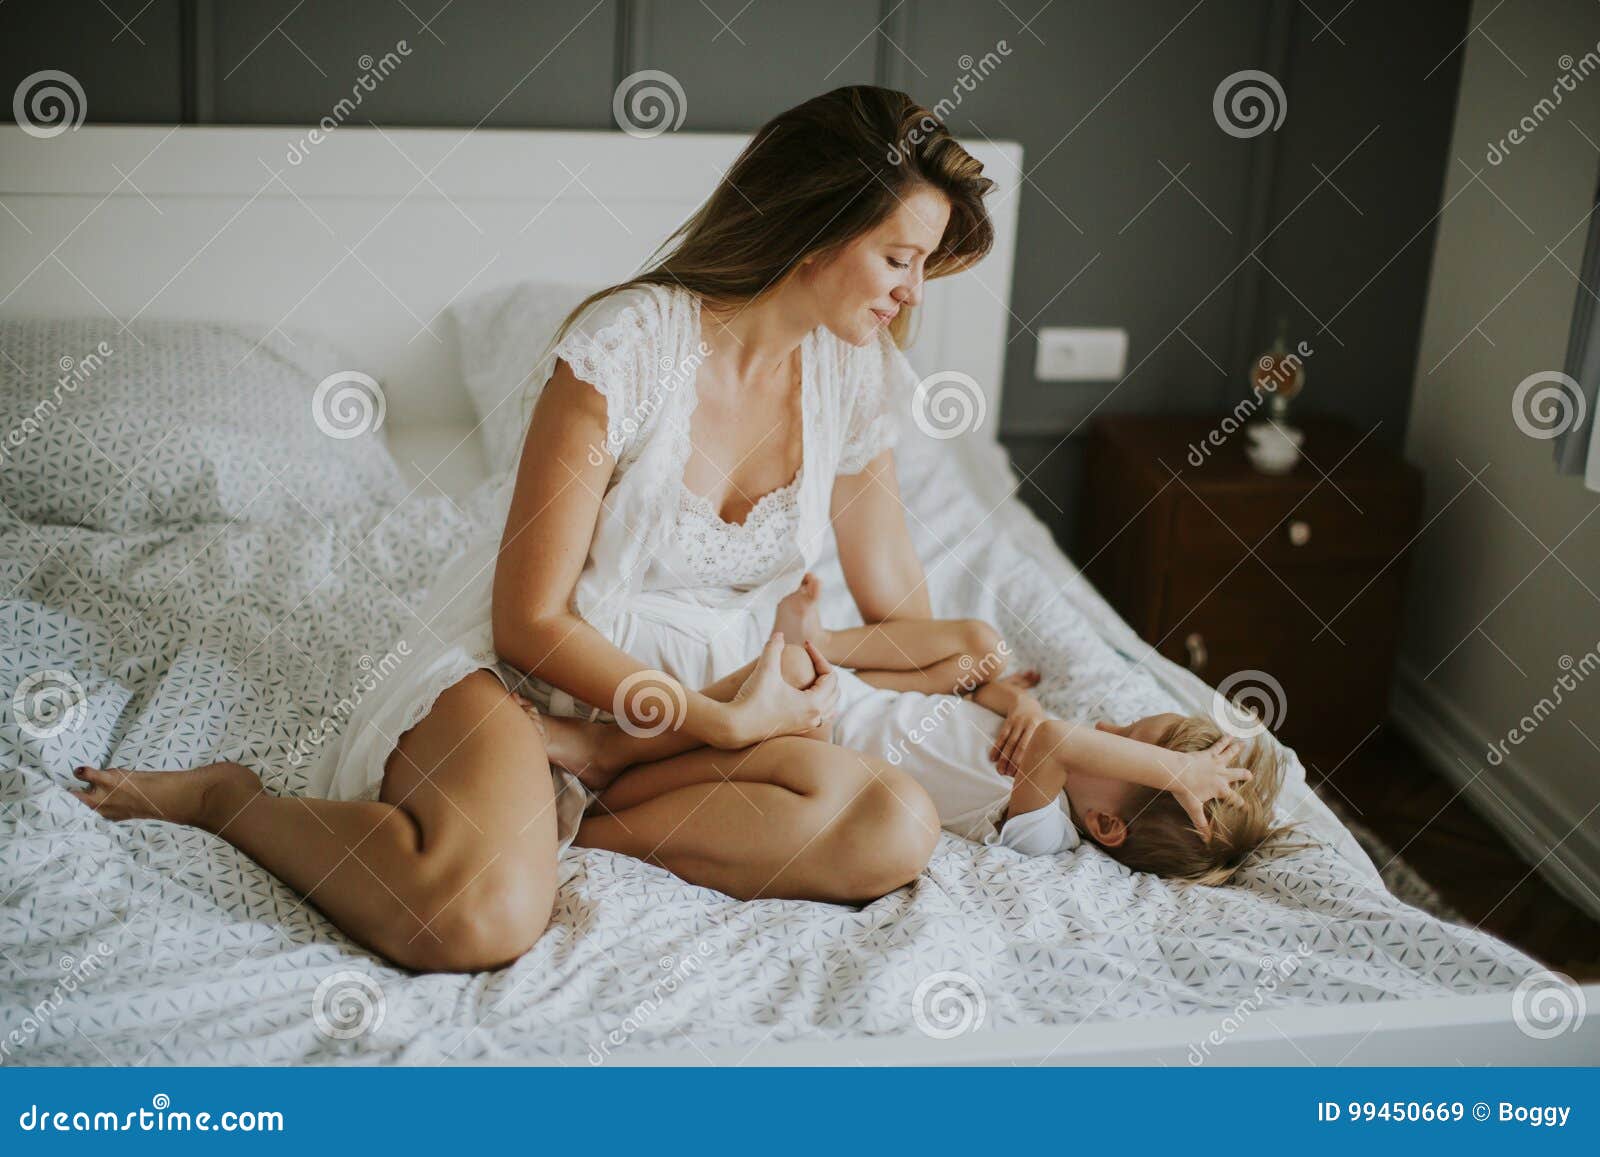 Молодые мамы в постели. Мать у кровати. Мамочки на кровати. Женщина и мальчик в постели.